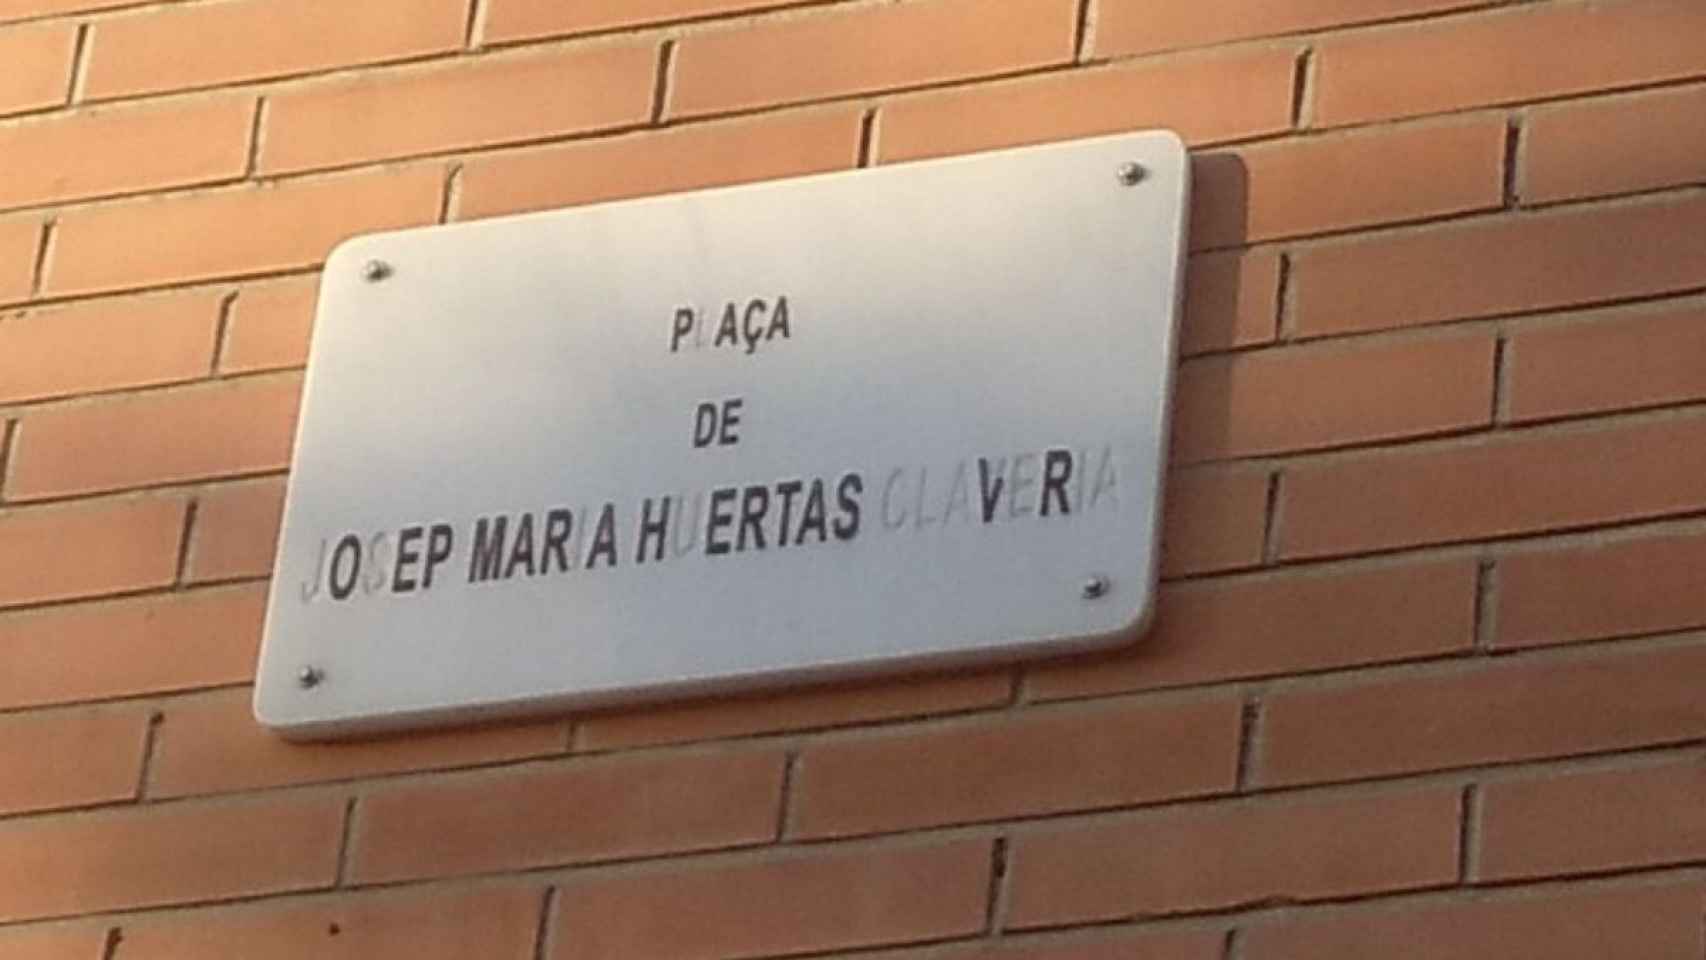 Estado actual de la placa a Josep Maria Huertas Claveria, en el paseo de la memoria social del Poblenou / @cazagra